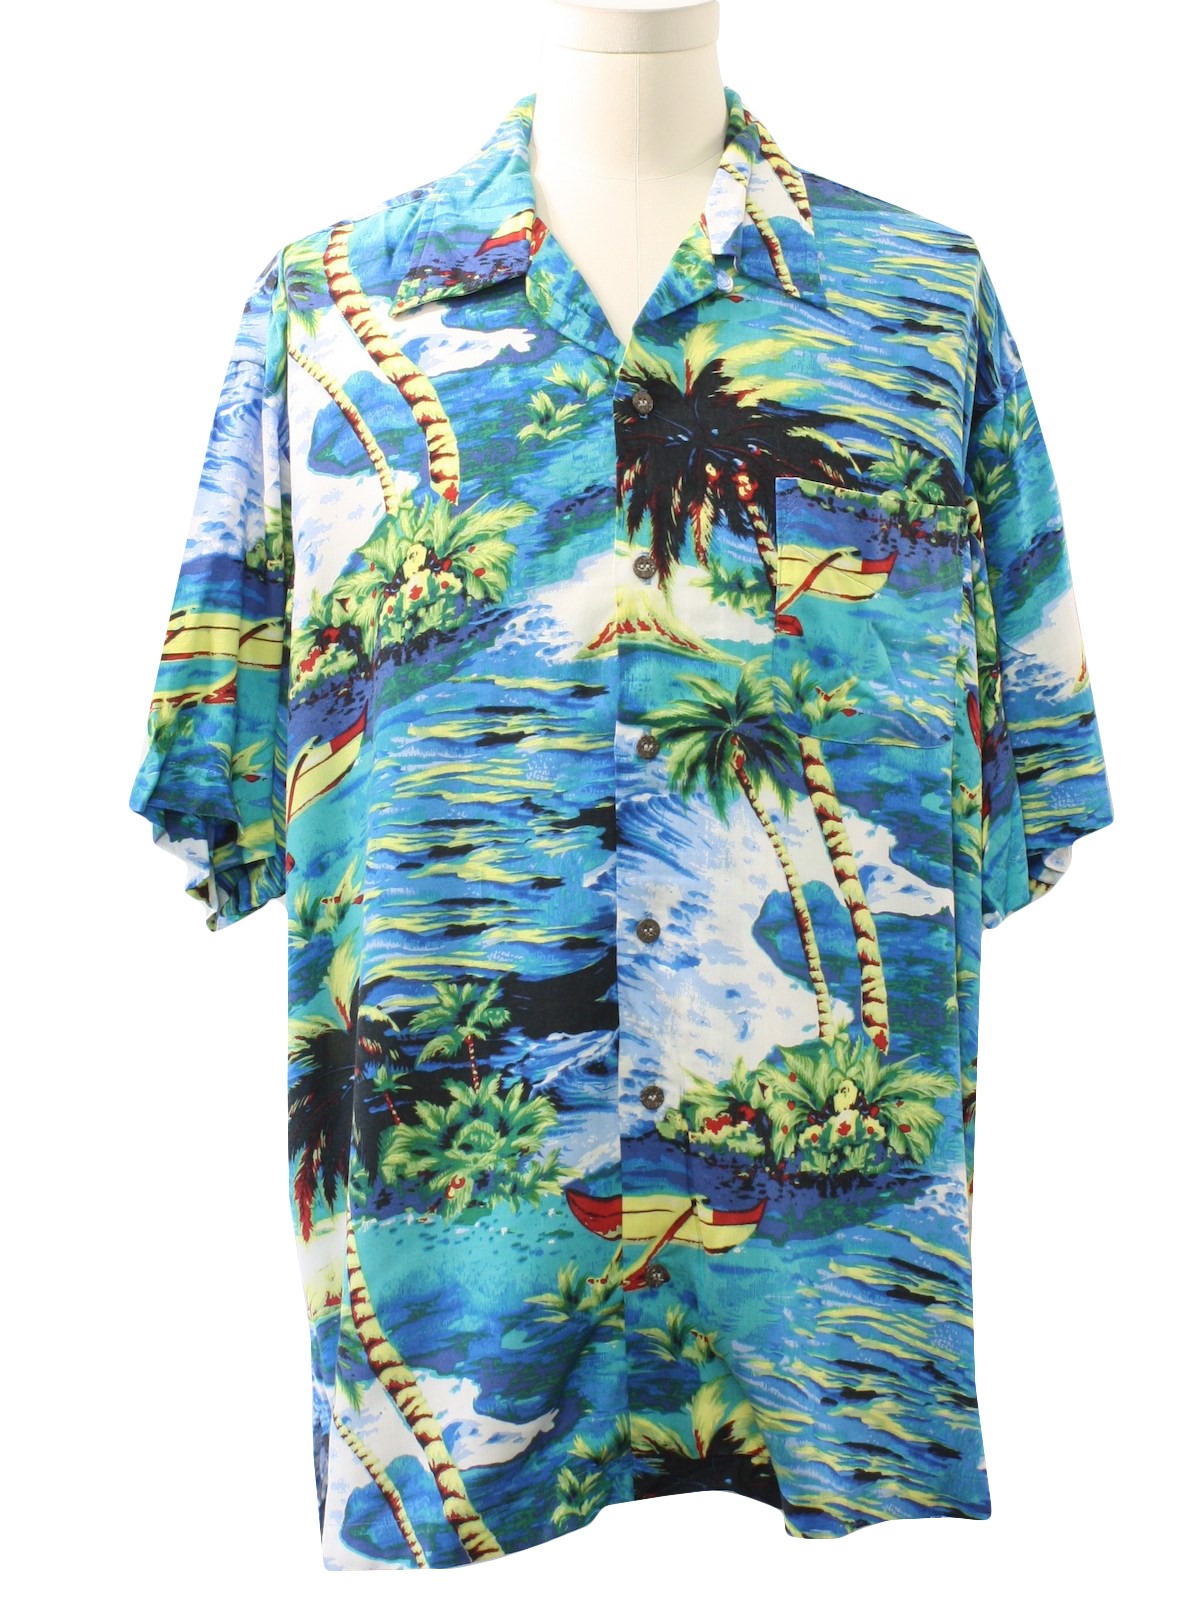 Retro 1990s Hawaiian Shirt: 90s -Utility- Mens blue background, navy ...